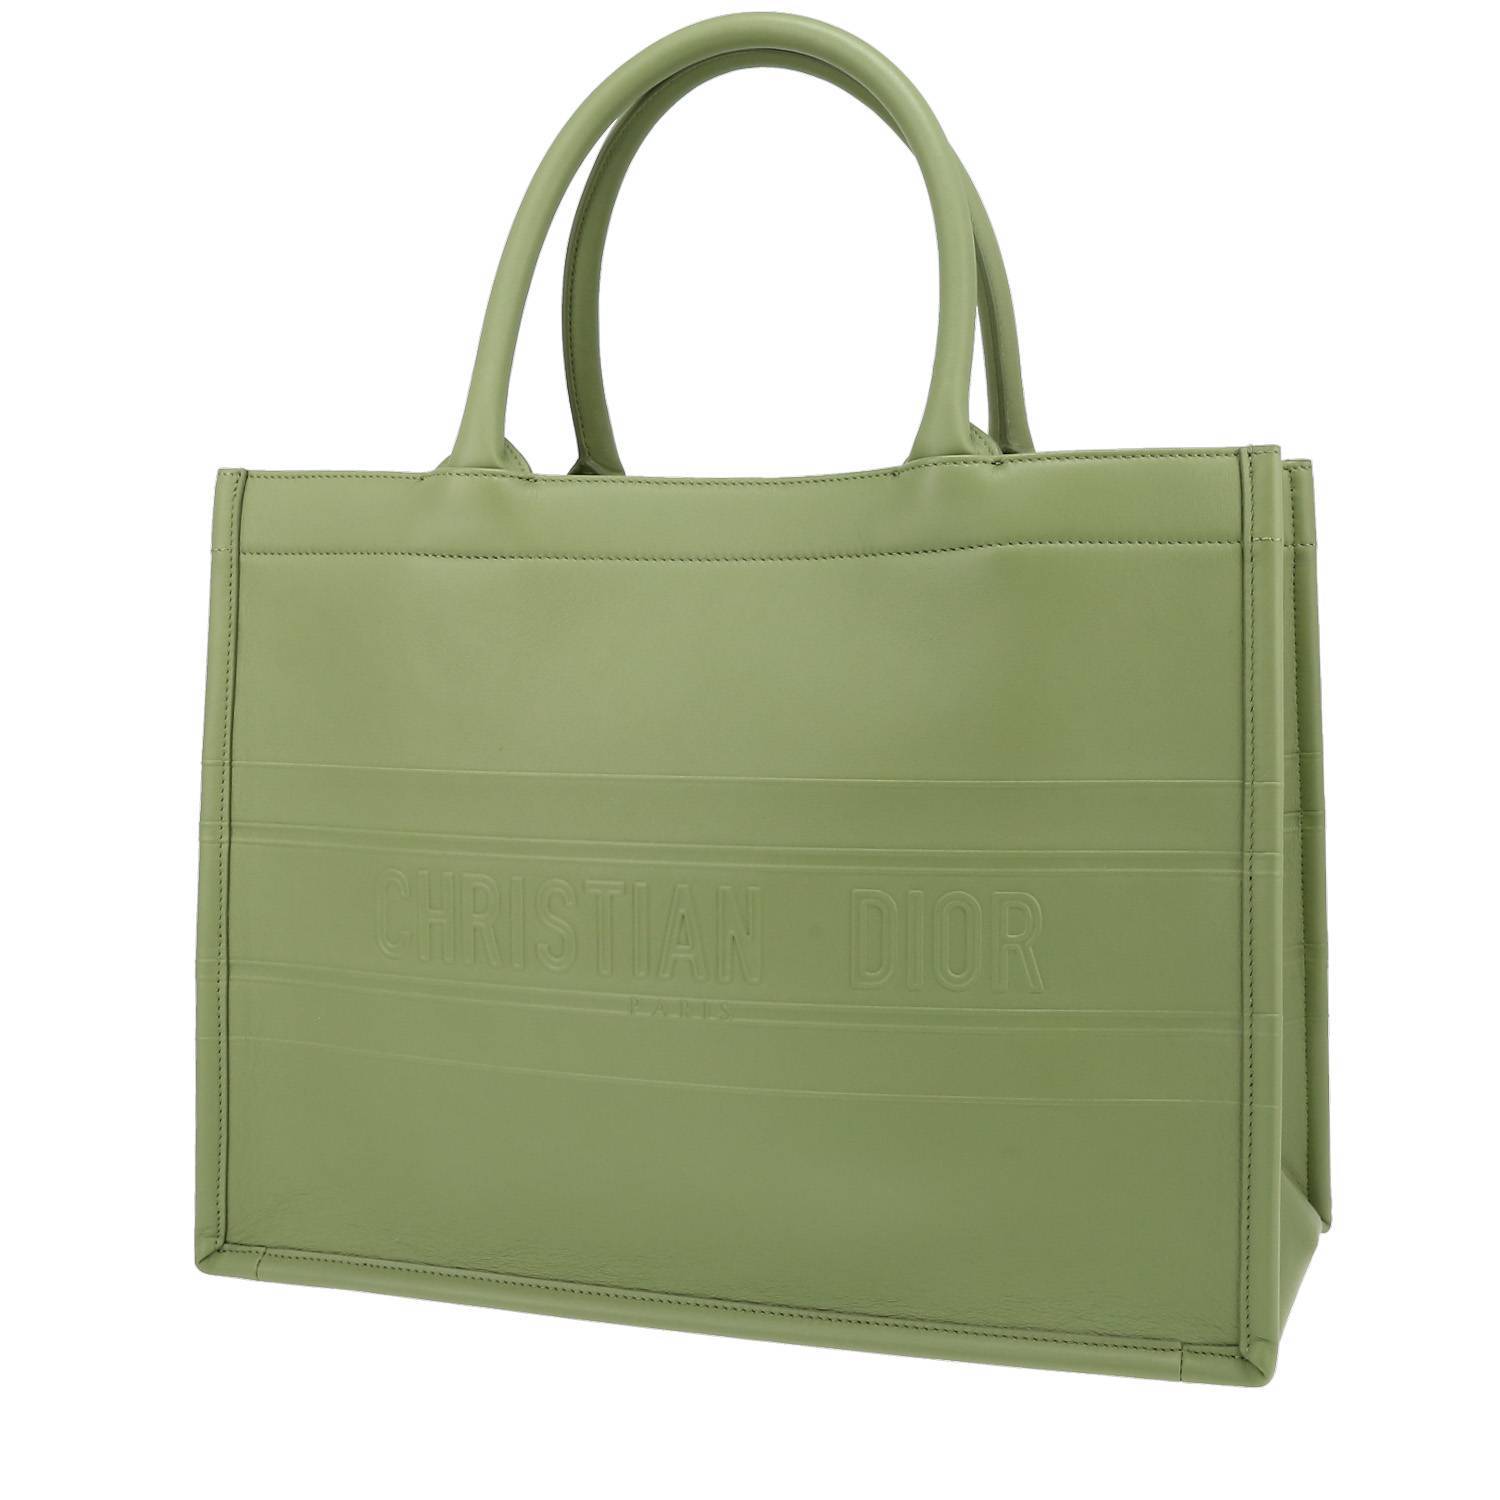 Sublime sac cabas Dior Book Tote en cuir vert, double poignée en cuir vert permettant un porté main. Intérieur en daim vert. Vendu avec dustbag. Signature: 